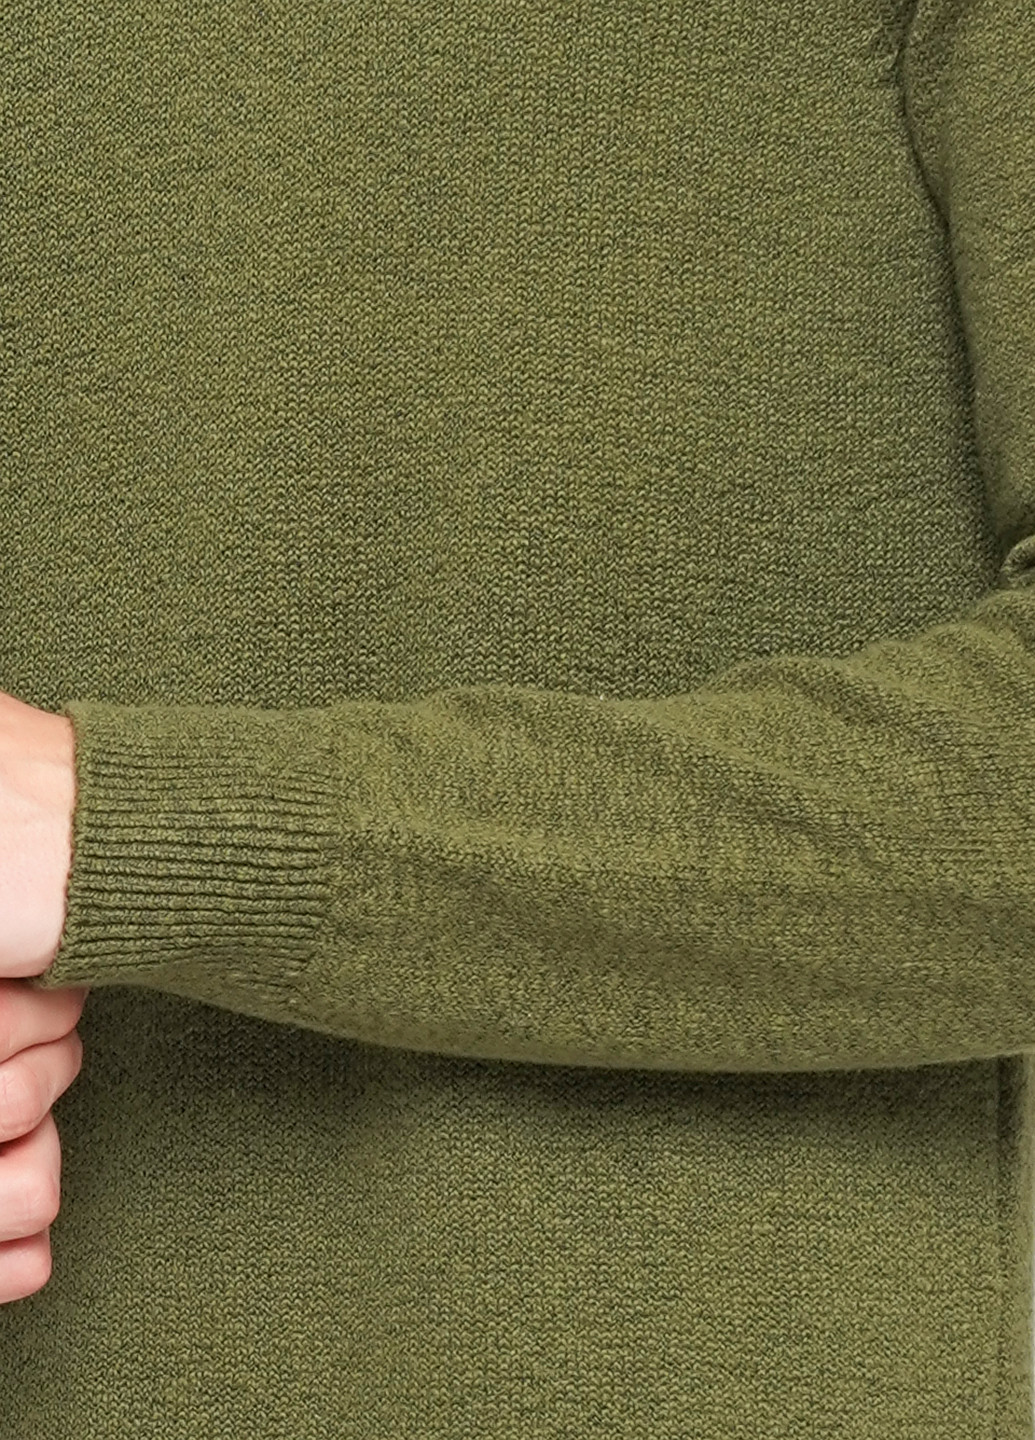 Зеленый демисезонный пуловер пуловер S.Oliver